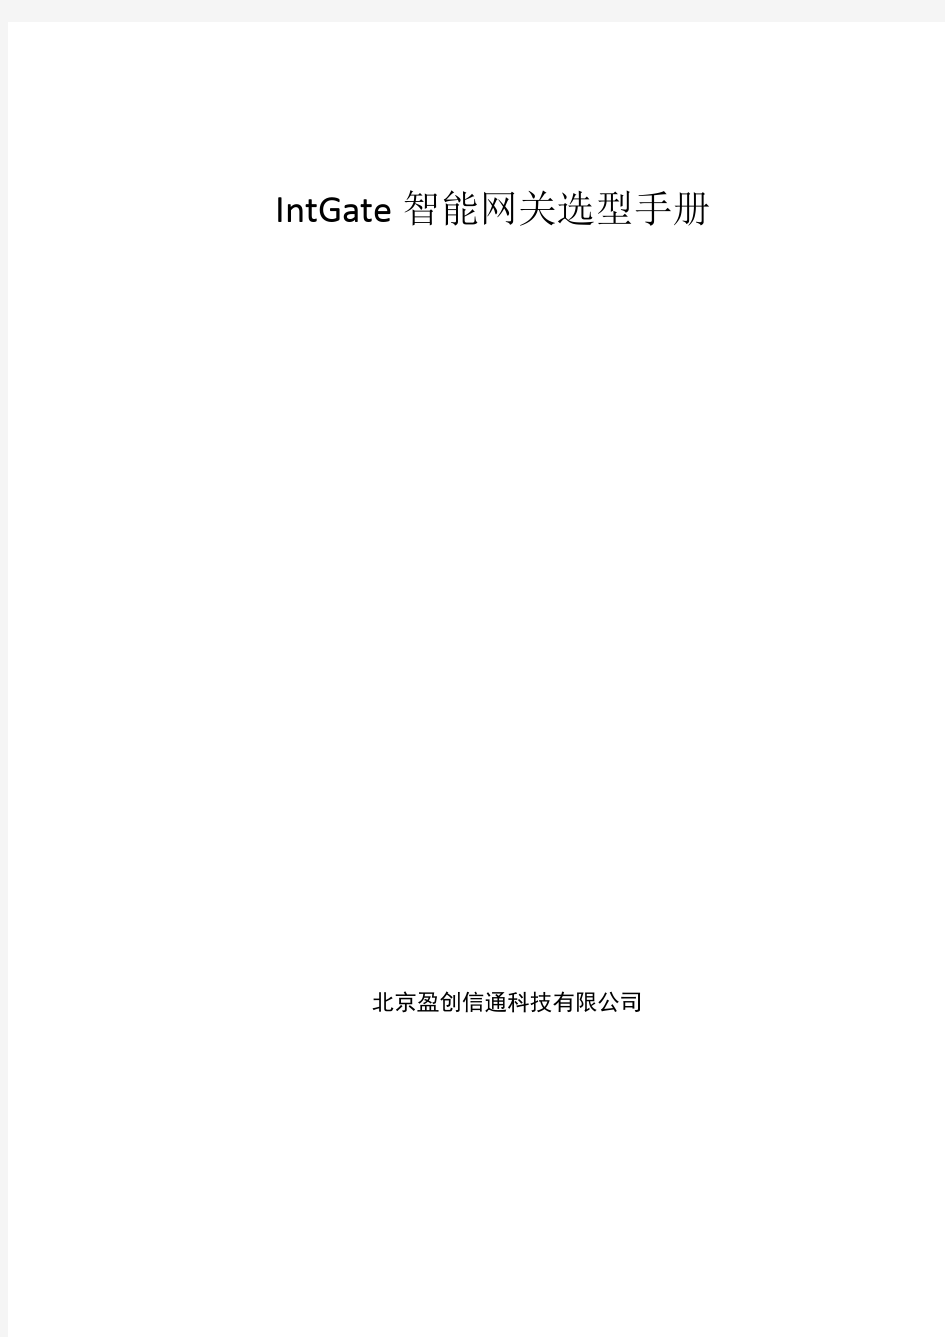 盈创信通-IntGate工业智能网关产品选型手册